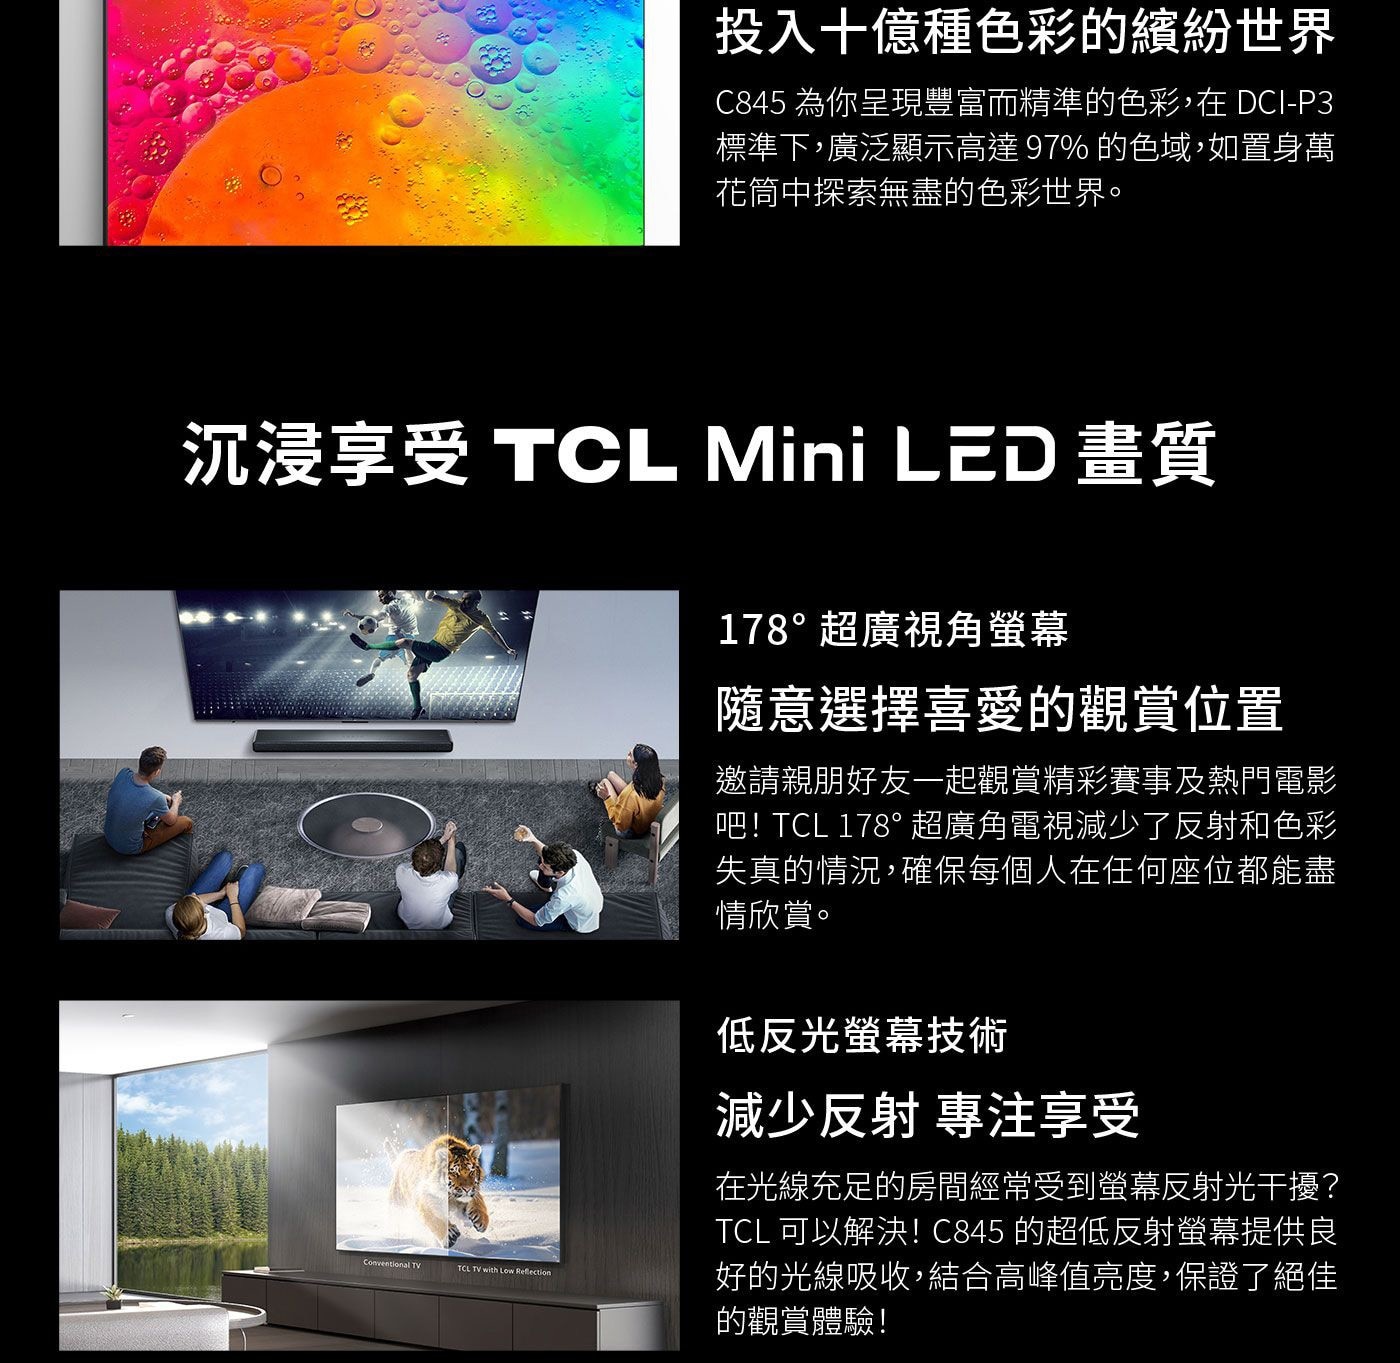 TCL 85吋 4K Mini LED QLED Google TV 量子智能連網液晶顯示器 85C845量子點技術投入十億色彩的繽紛世界隨意選擇喜愛的觀賞位置超廣角螢幕低反光螢幕技術